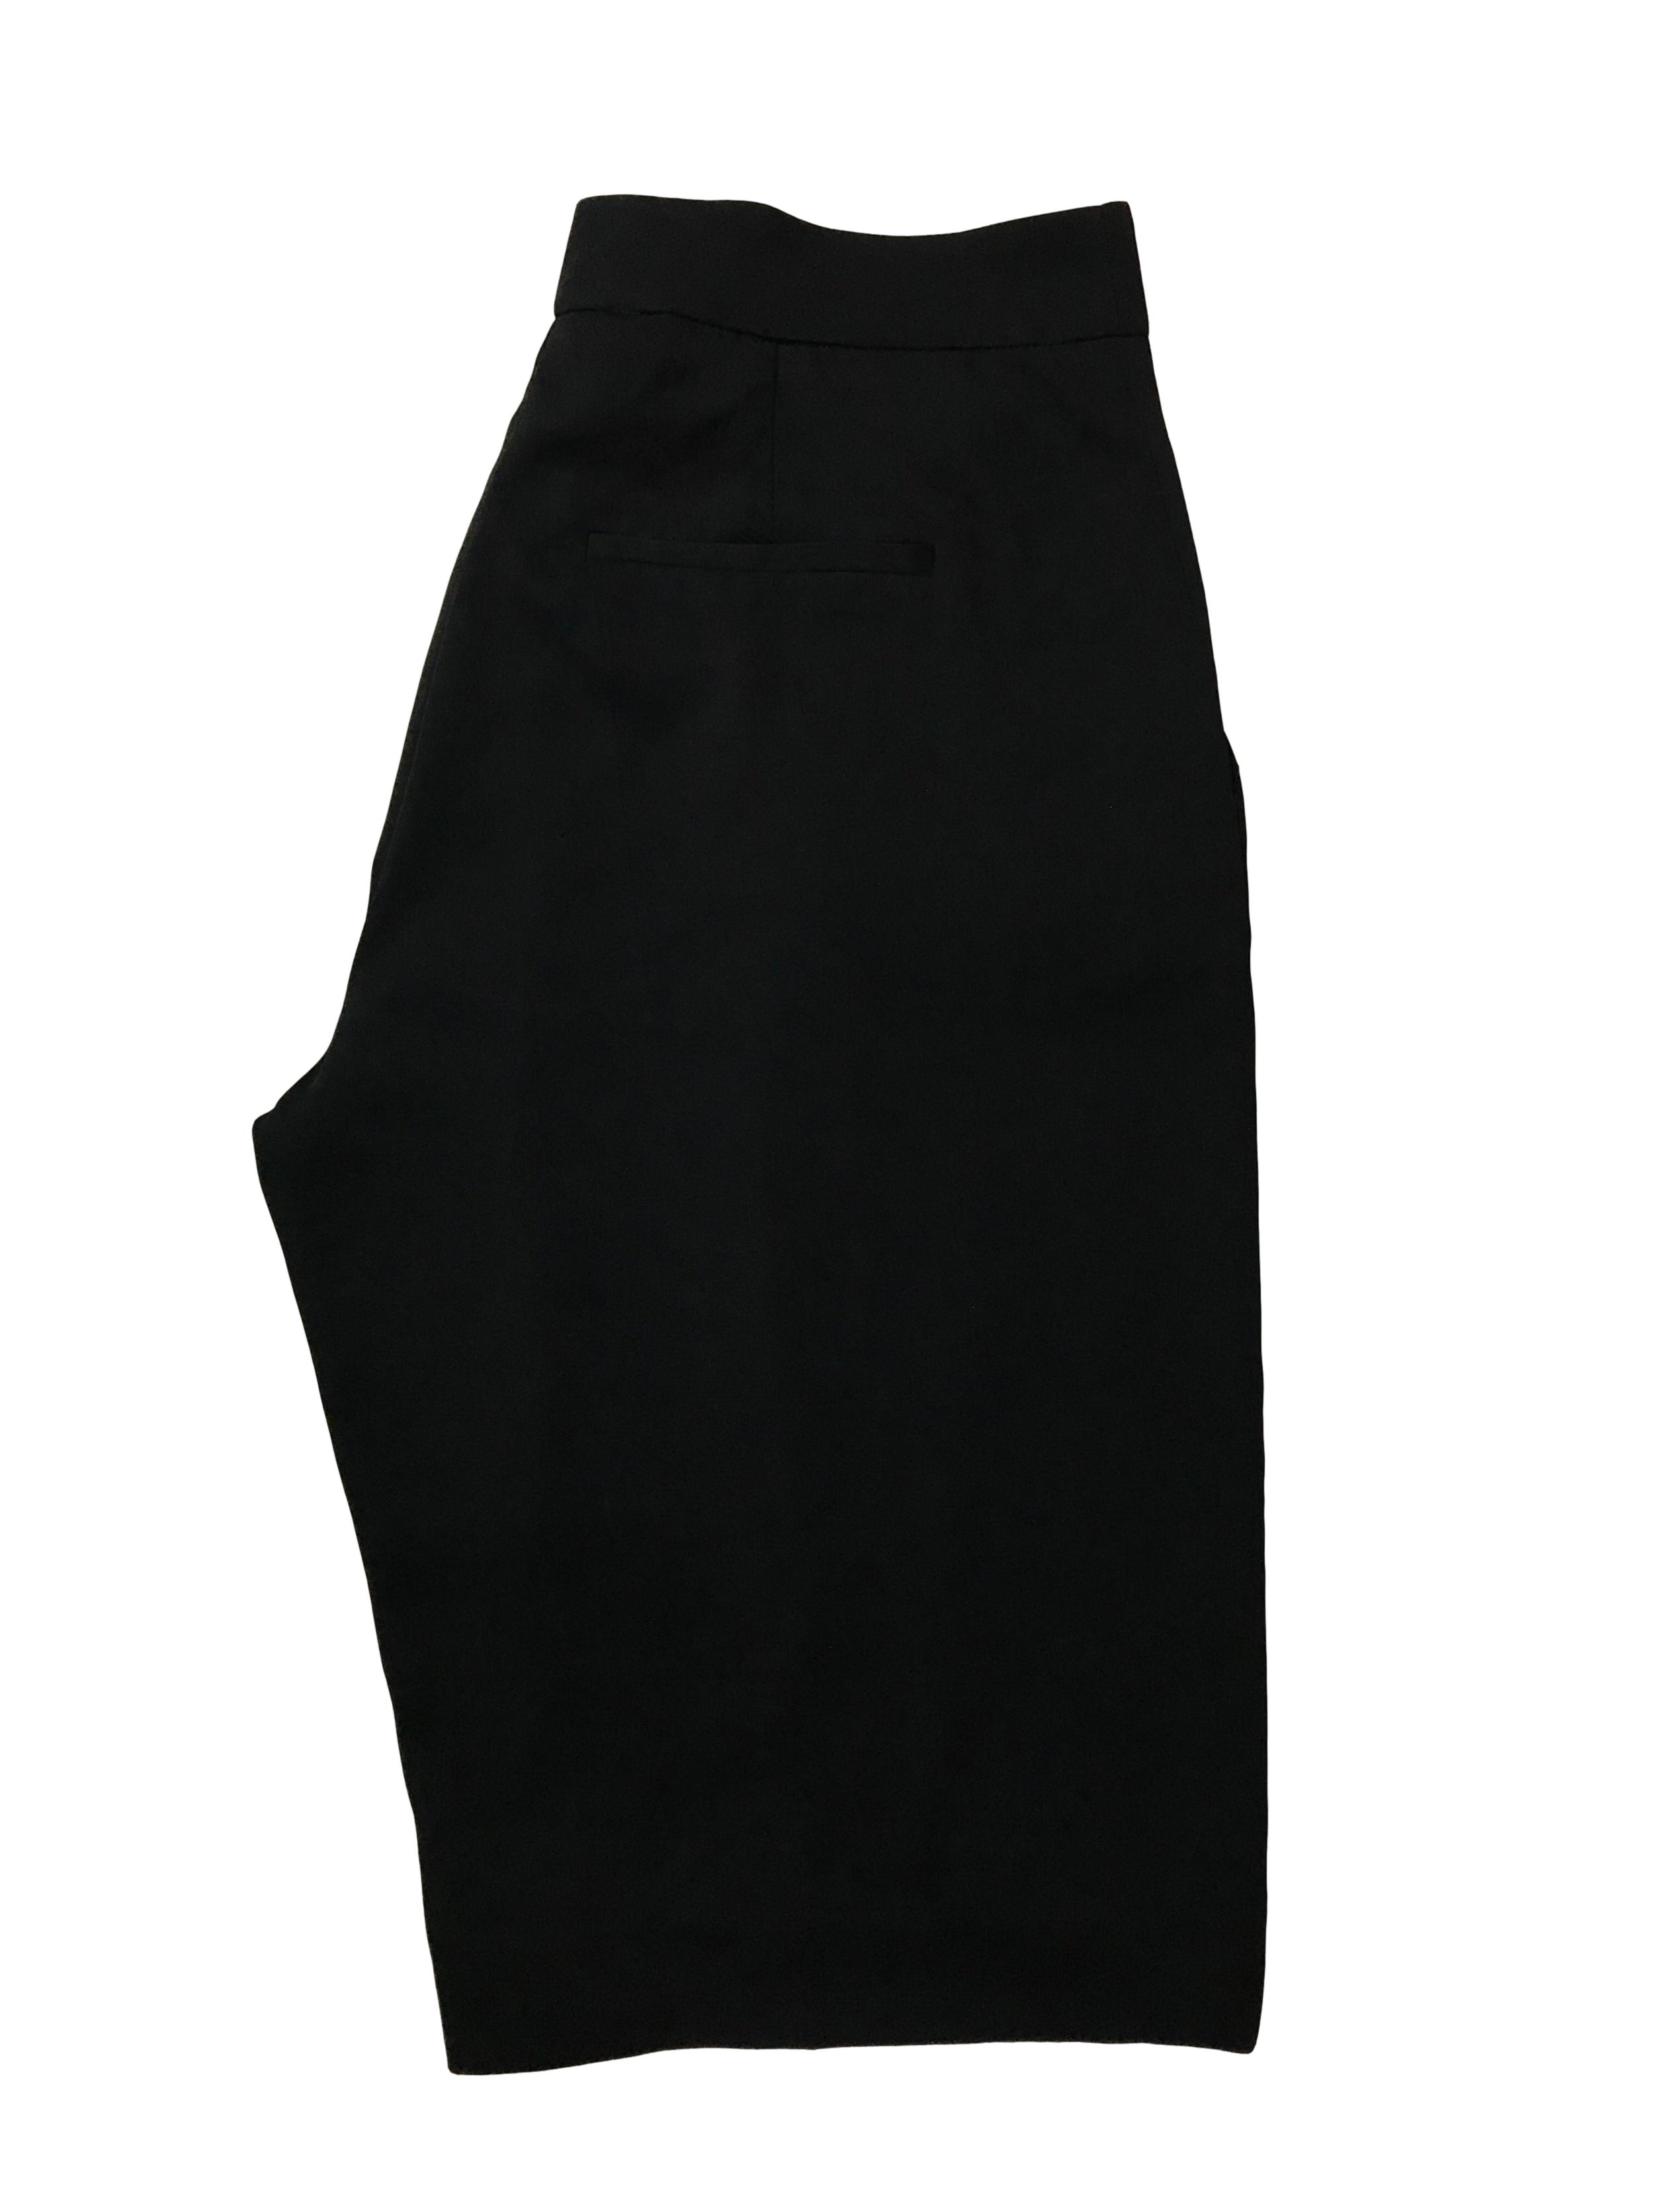 Bermuda Zara fluida negra con pliegues delanteros y bolsillos laterales, corte recto con cierre al lado . Cintura 80cm Largo 58cm. Precio original S/ 139